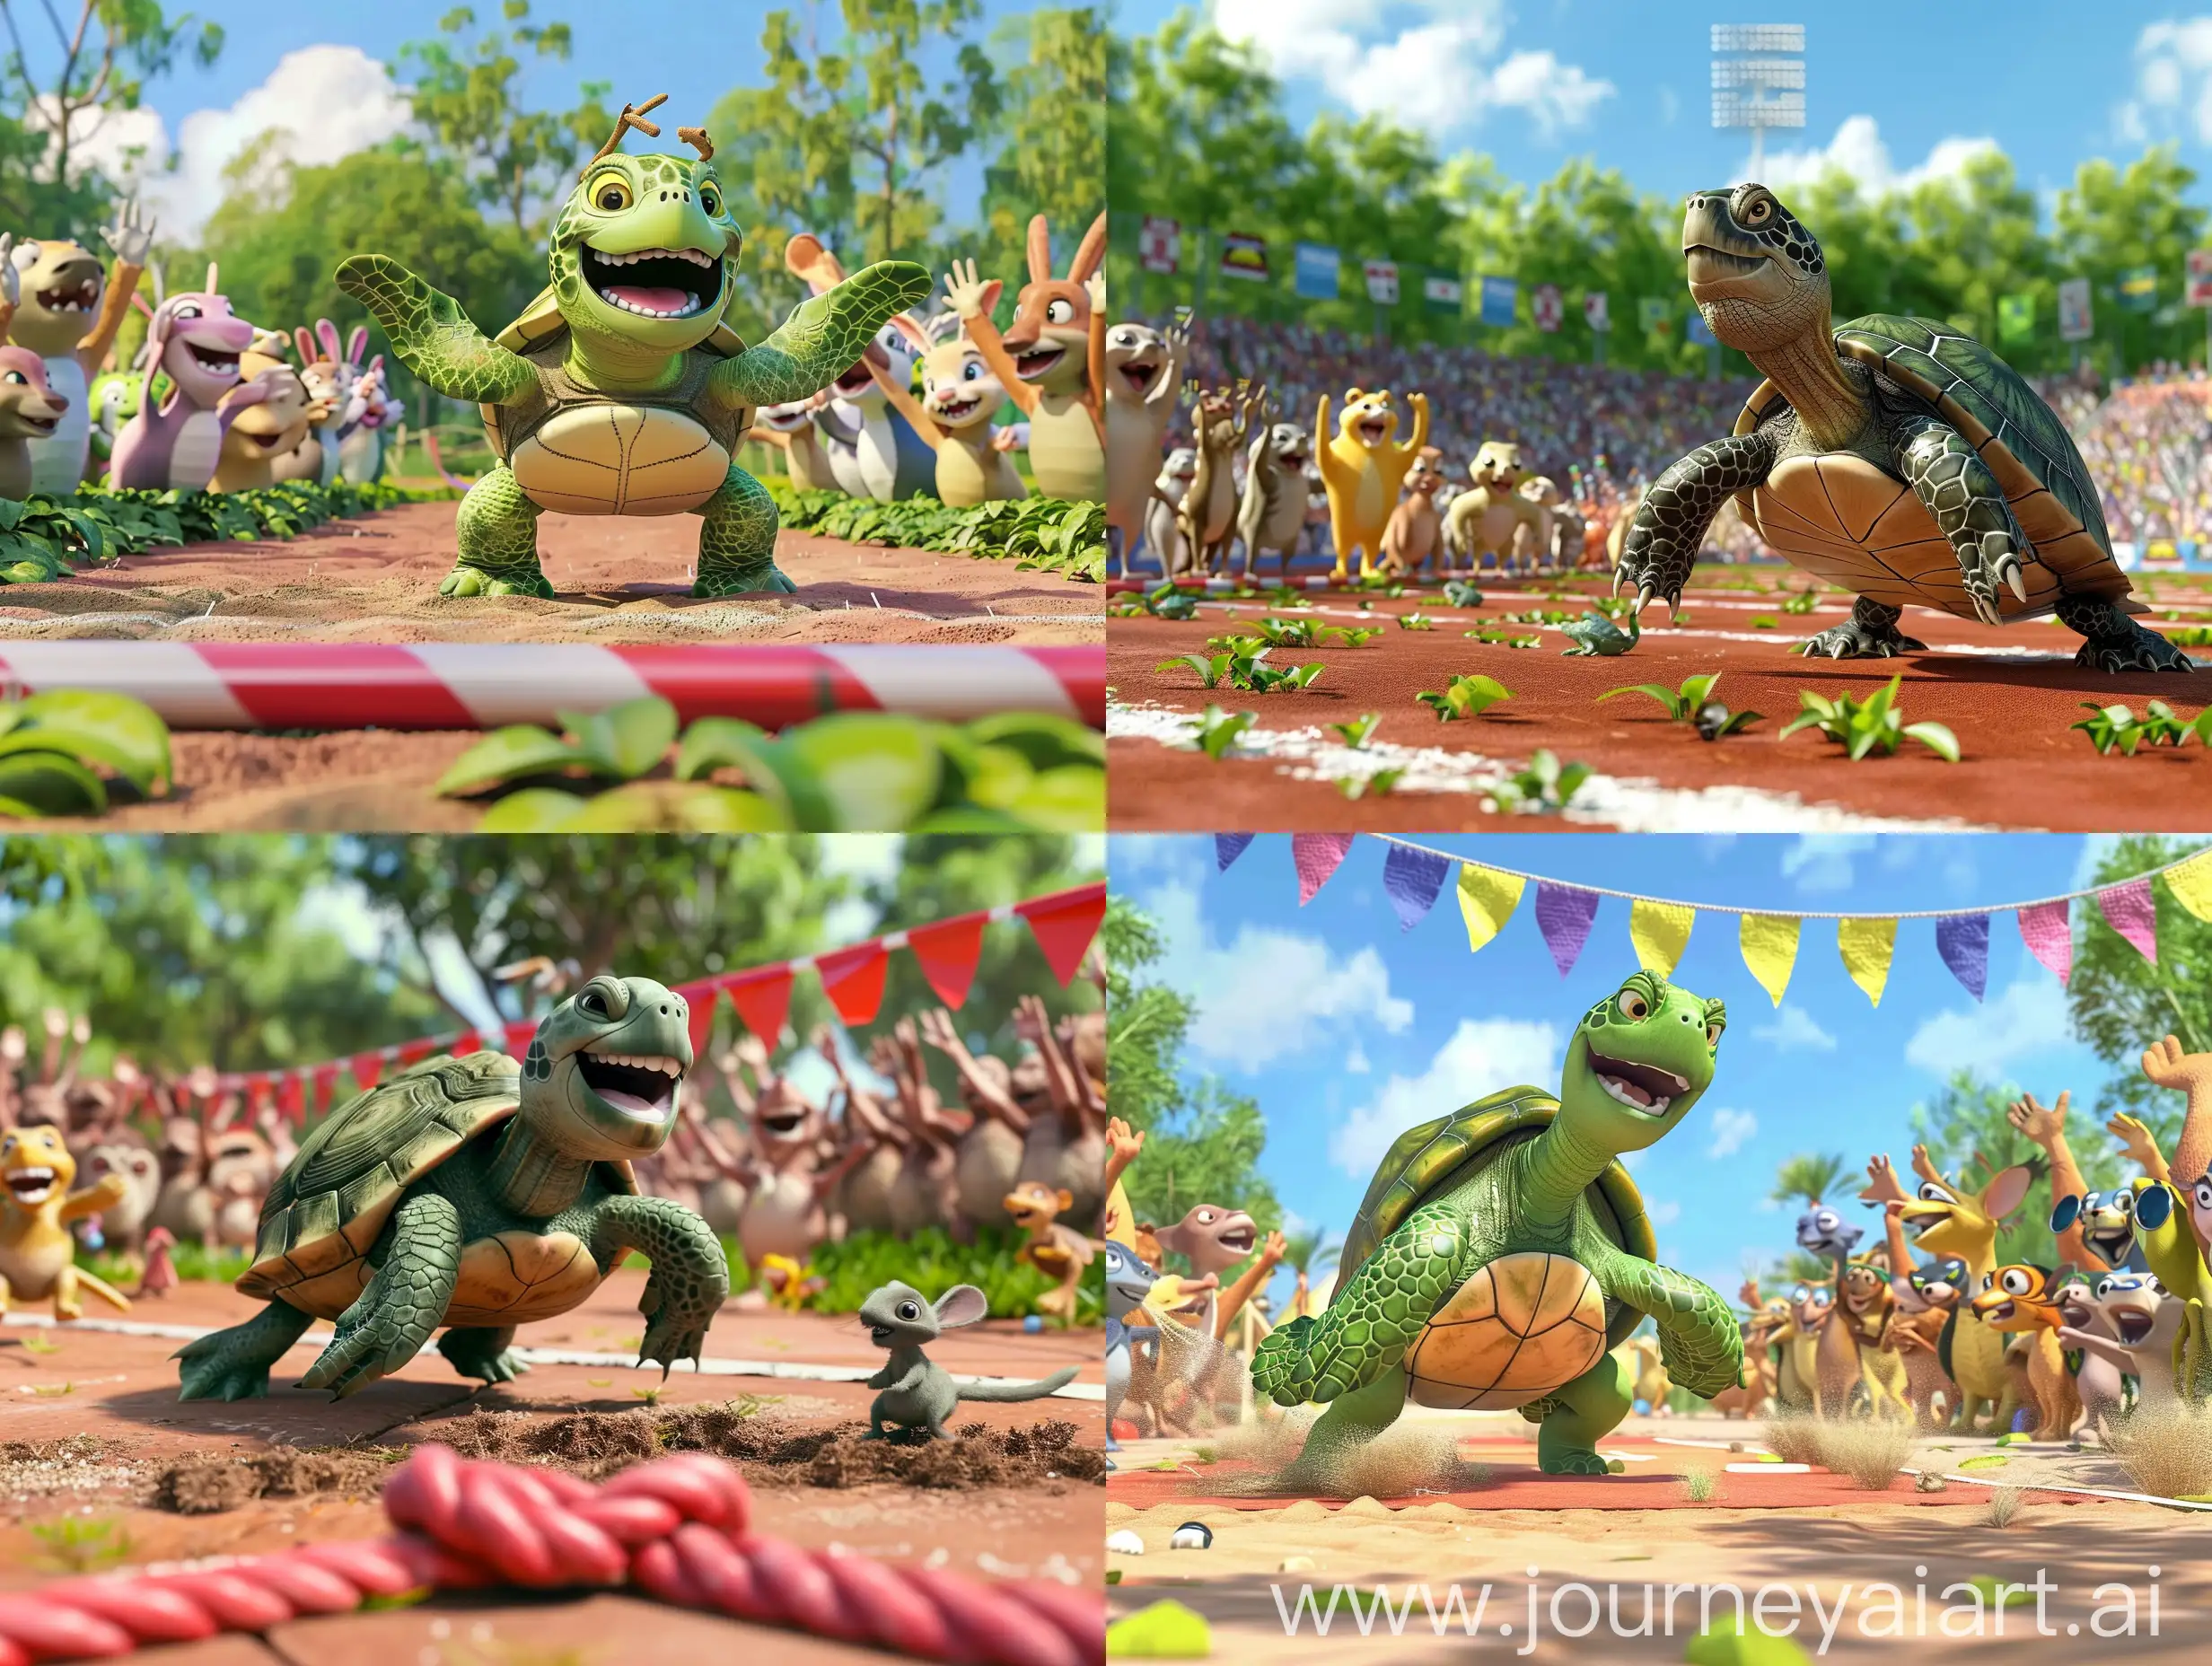 乌龟冲过终点线，所有的小动物都围绕着它欢呼庆祝，3D，迪斯尼动画风格